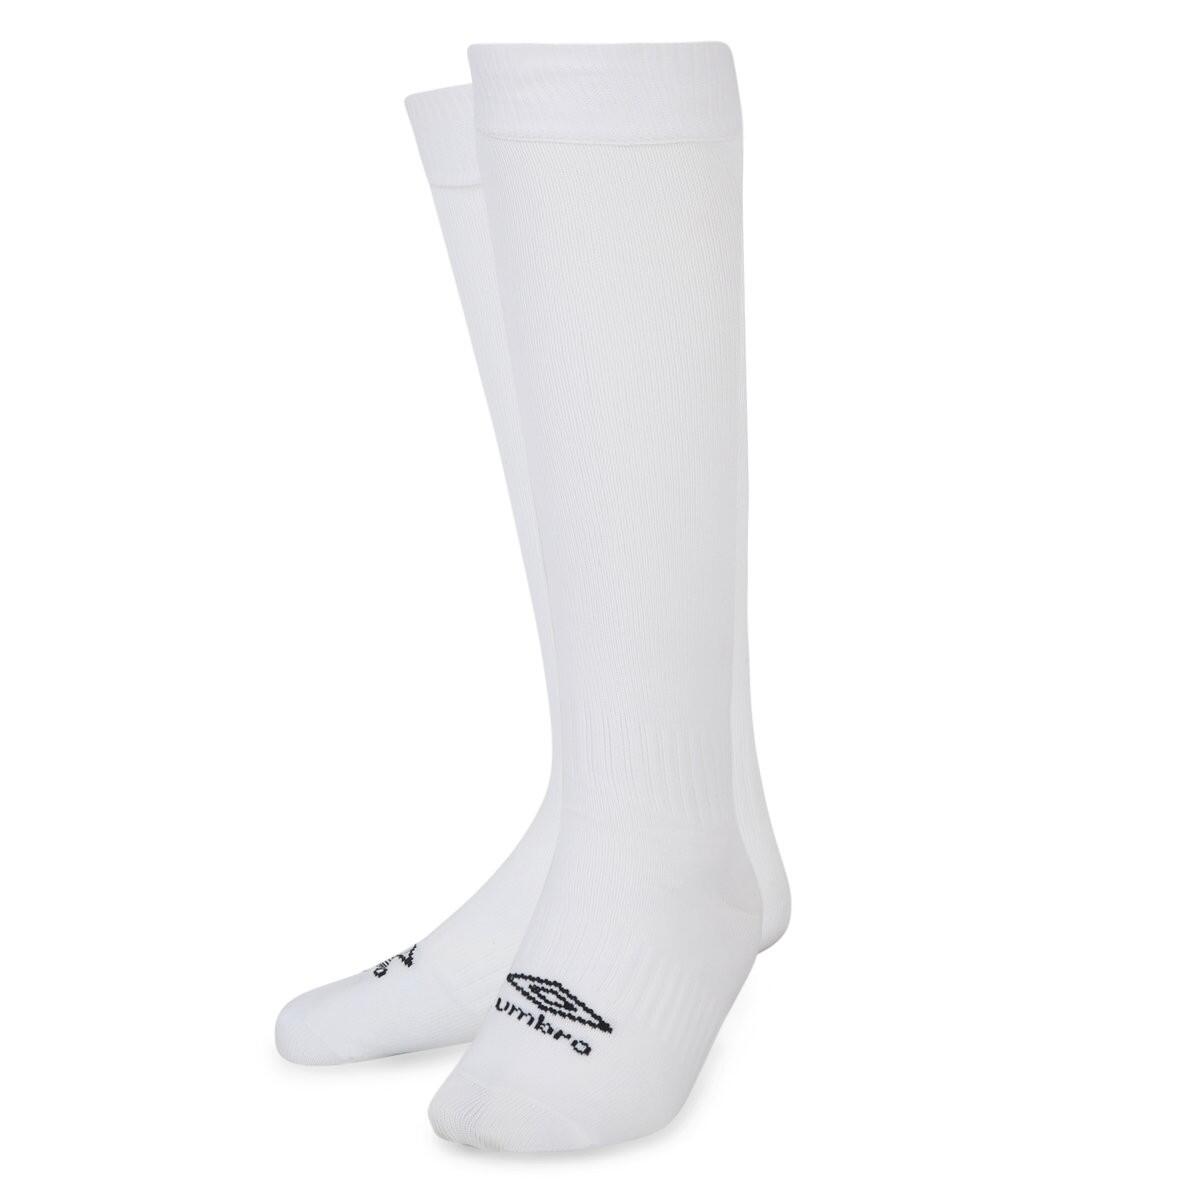 UMBRO Mens Primo Football Socks (White/Black)